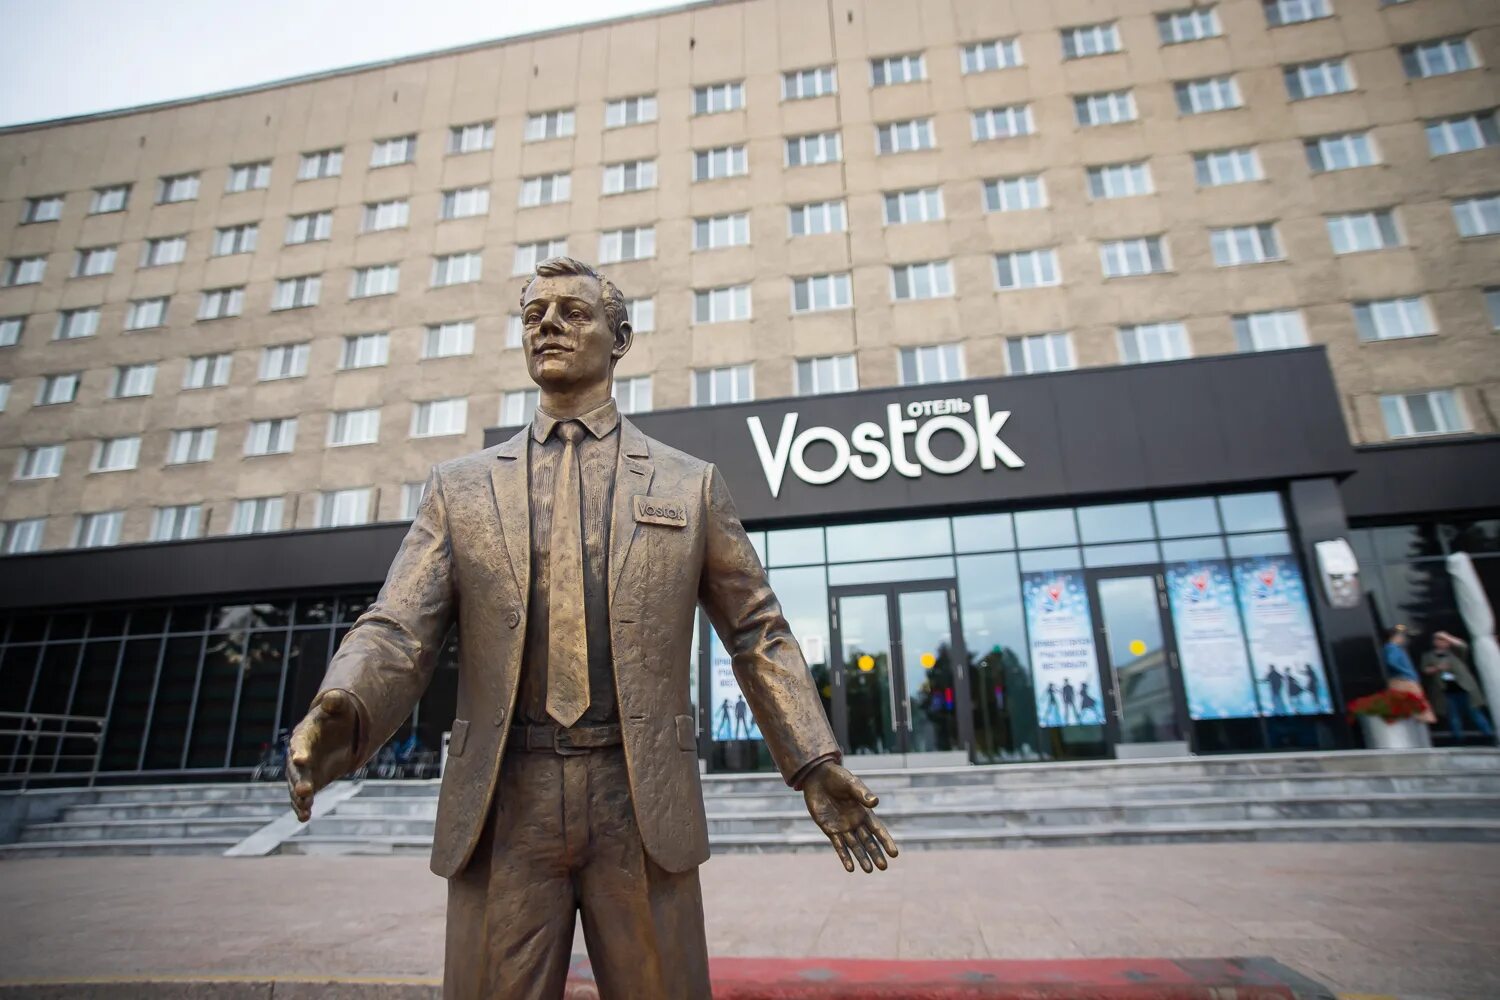 Отель Vostok Тюмень. Гостиница Восток 3 Тюмень. Отель Восток Тюмень ресепшн. Сайт отеля восток